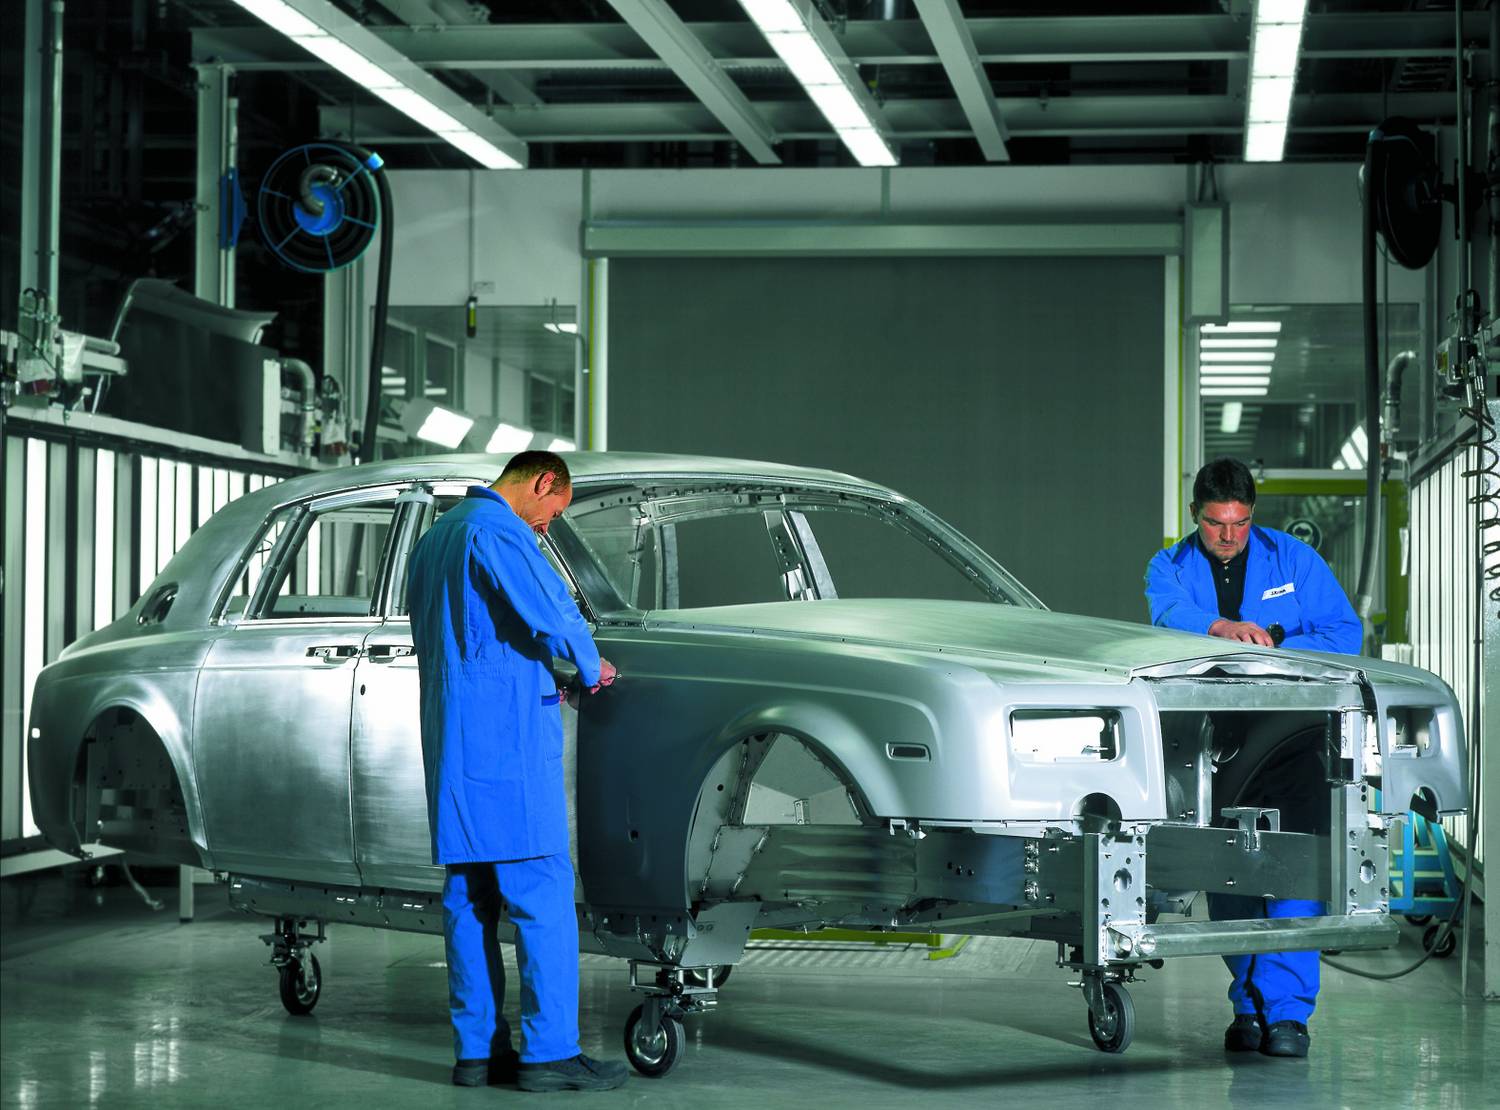 20 éve termeli Goodwoodban a luxust a Rolls-Royce